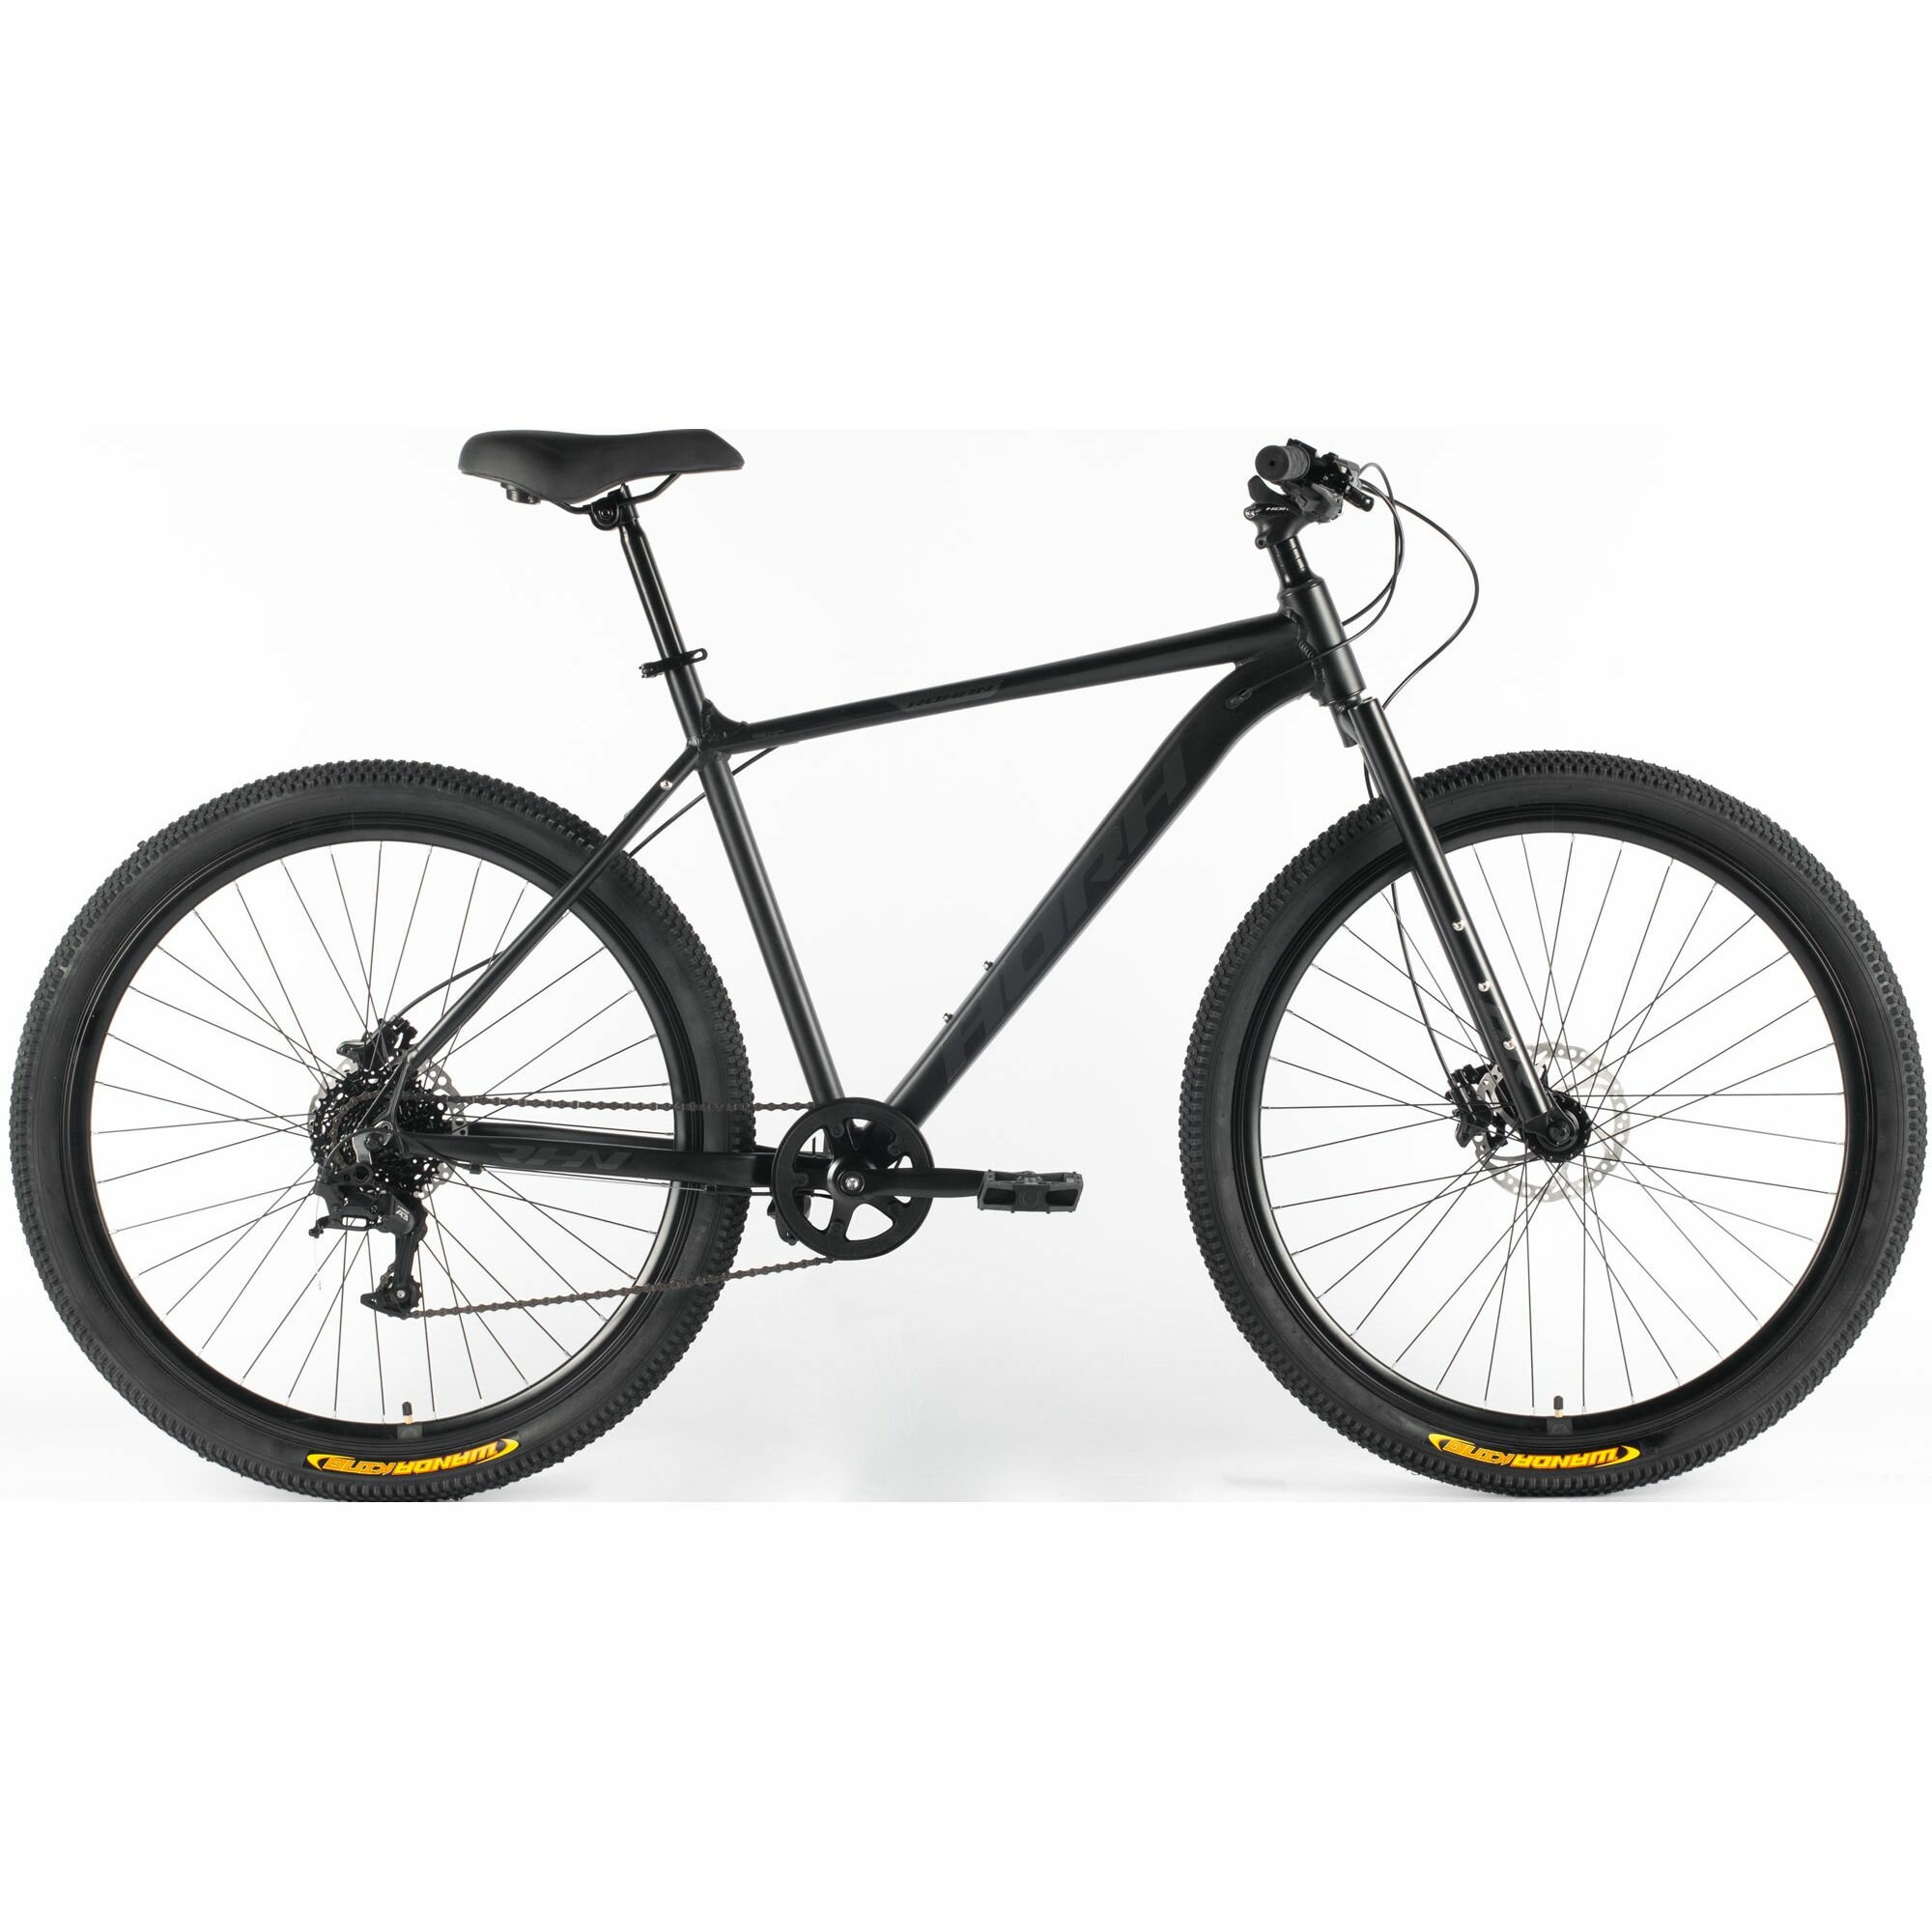 Велосипед горный HORH ROHAN RHD 9.1R 29" (2024), ригид, взрослый, мужской, алюминиевая рама, 8 скоростей, дисковые гидравлические тормоза, цвет Black-Grey, черный/серый цвет, размер рамы 19", для роста 180-190 см